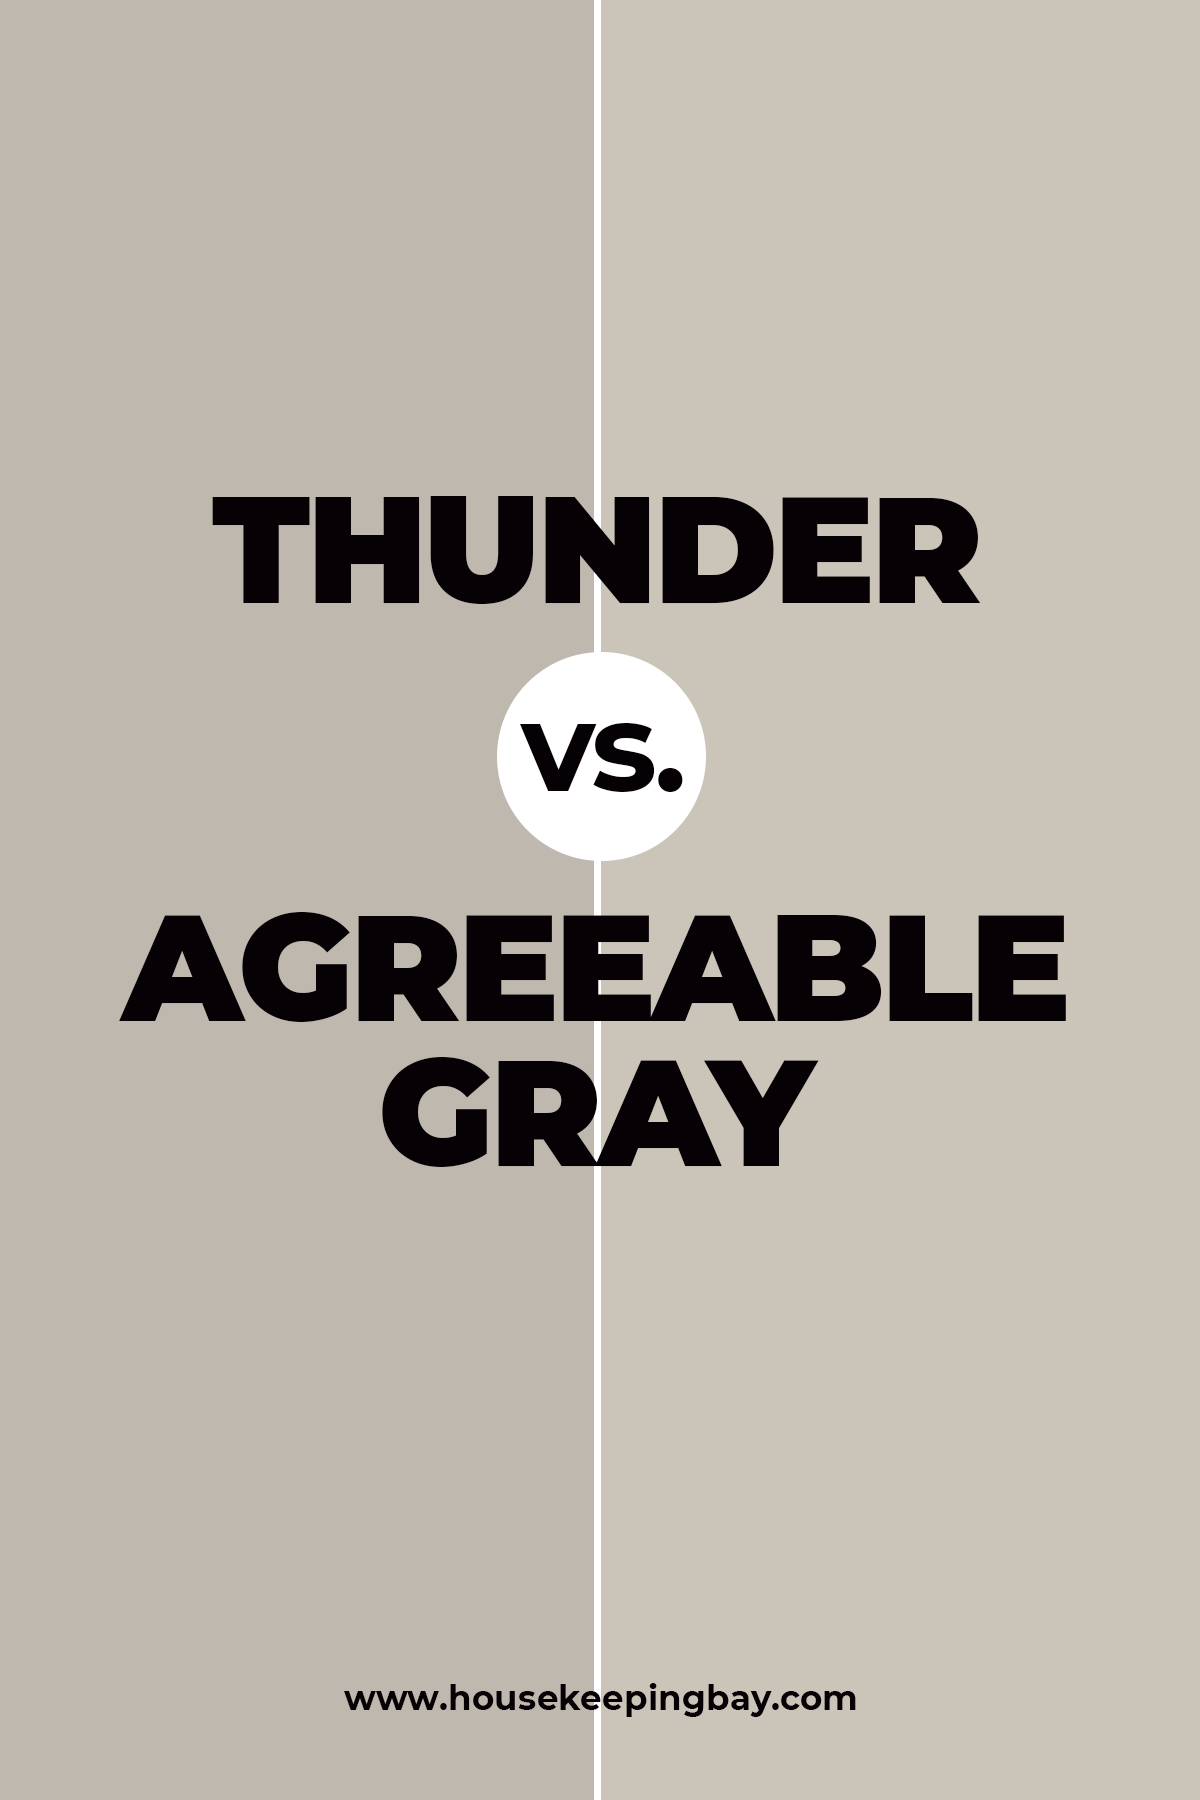 Thunder vs. Agreeable Gray